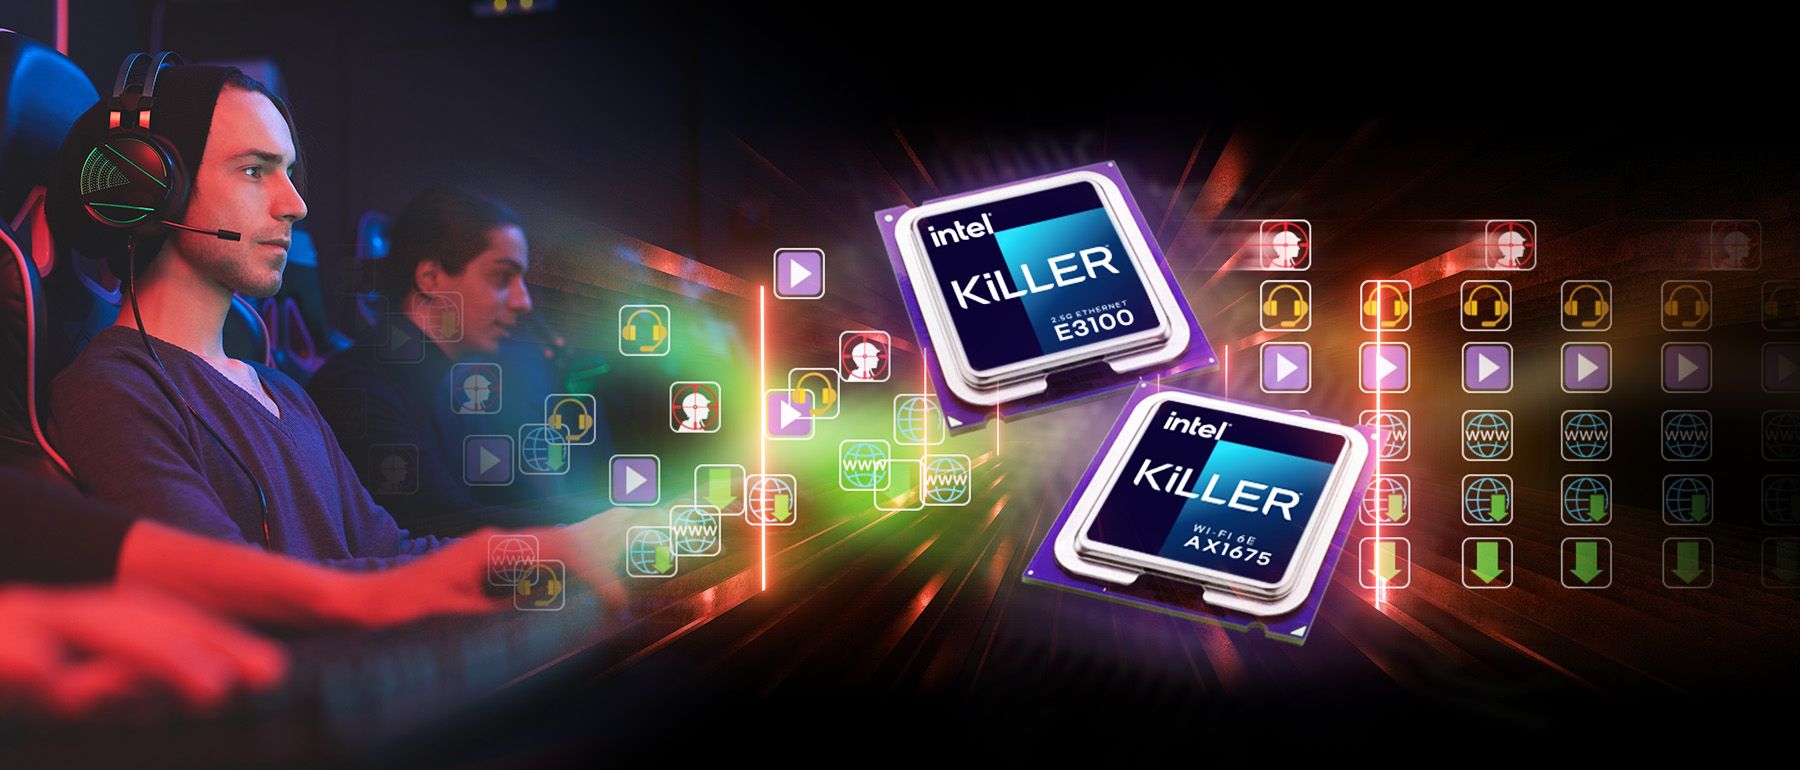 Killer E3100 + AX1675